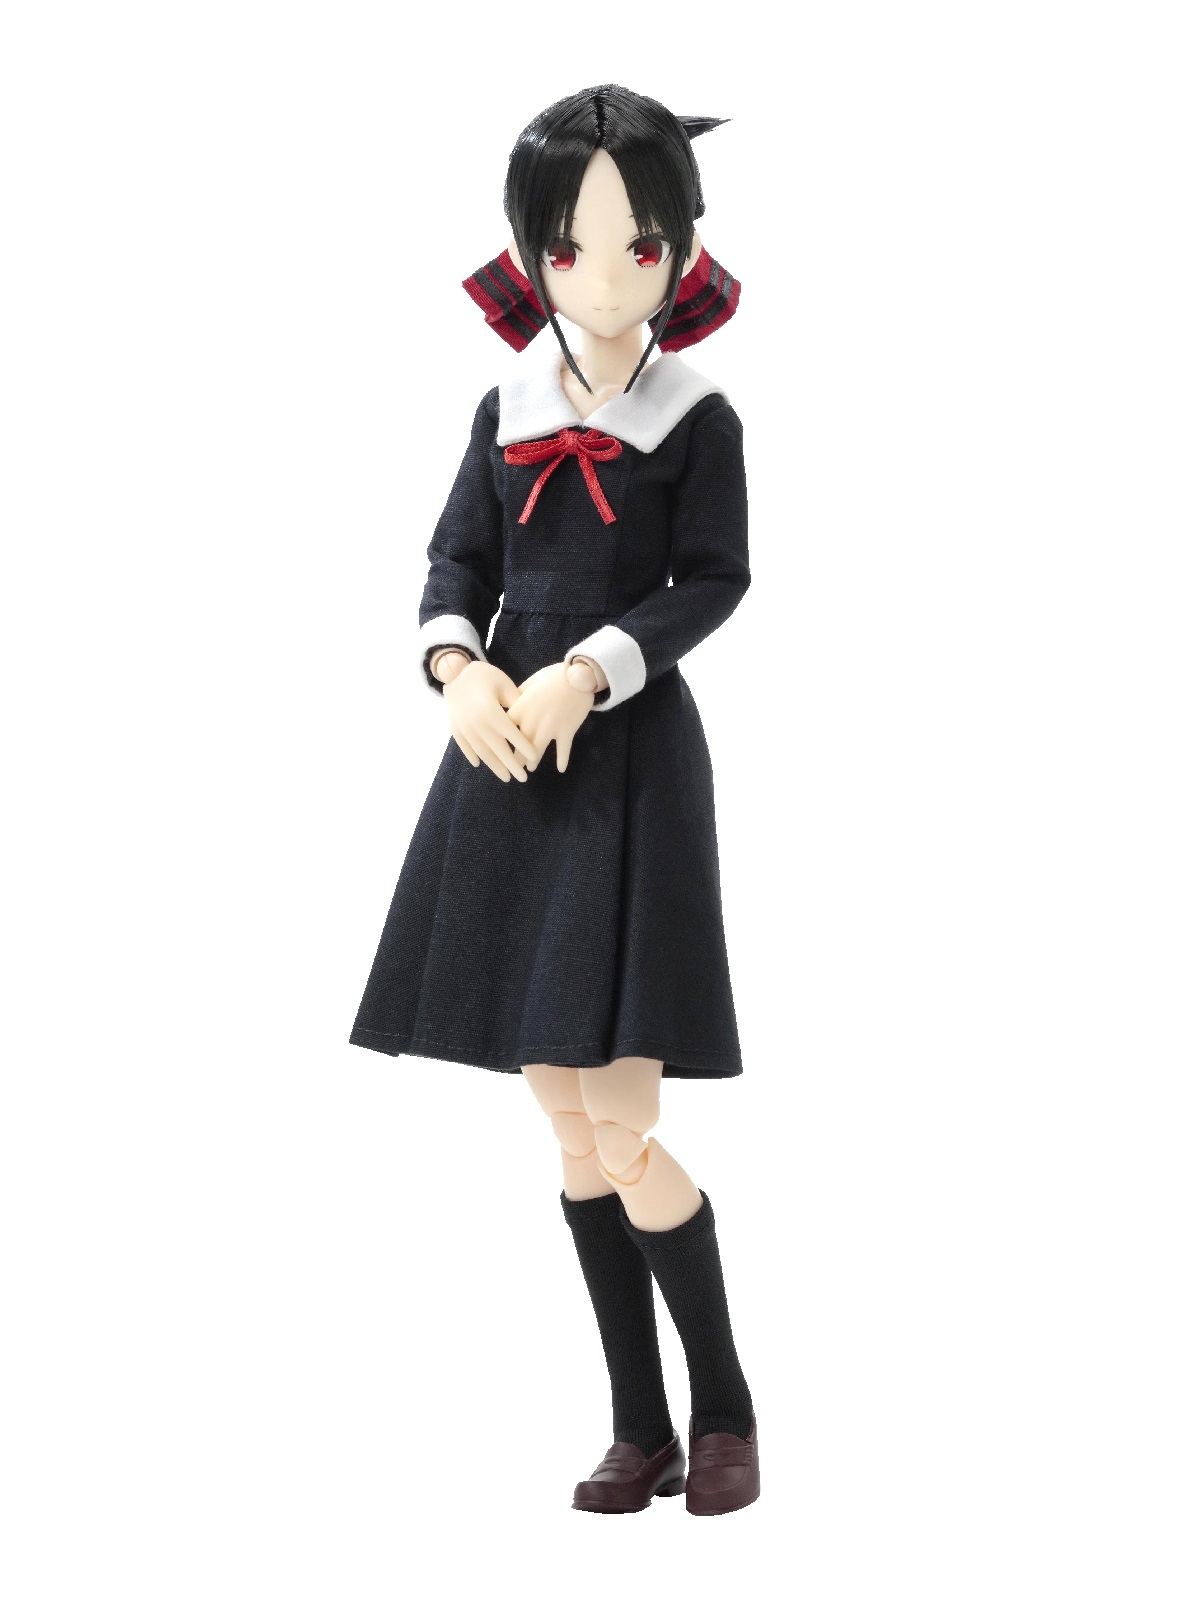 Kaguya Sama Love Is War Pureneemo Character Series 1 6 Scale Fashion Doll Kaguya Shinomiya Re Run